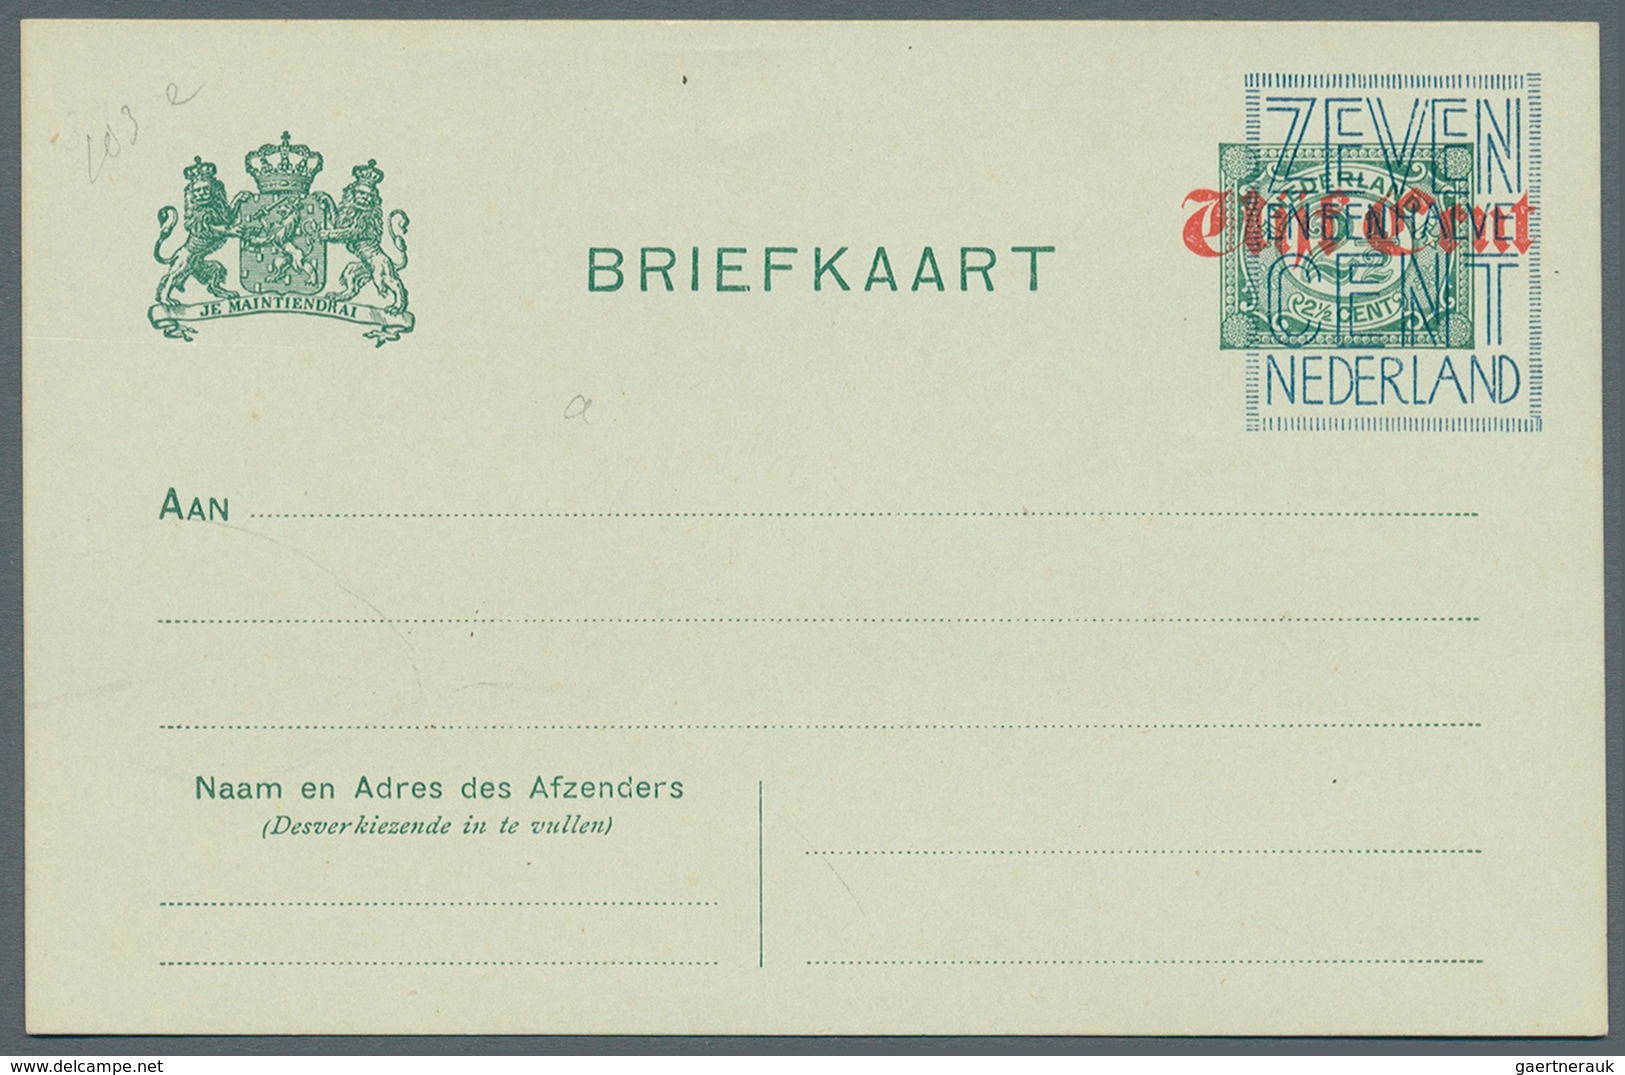 Niederlande - Ganzsachen: Ca 1920: ca 26 verschiedene nicht verausgabte Überdruckprovisorien von Gan